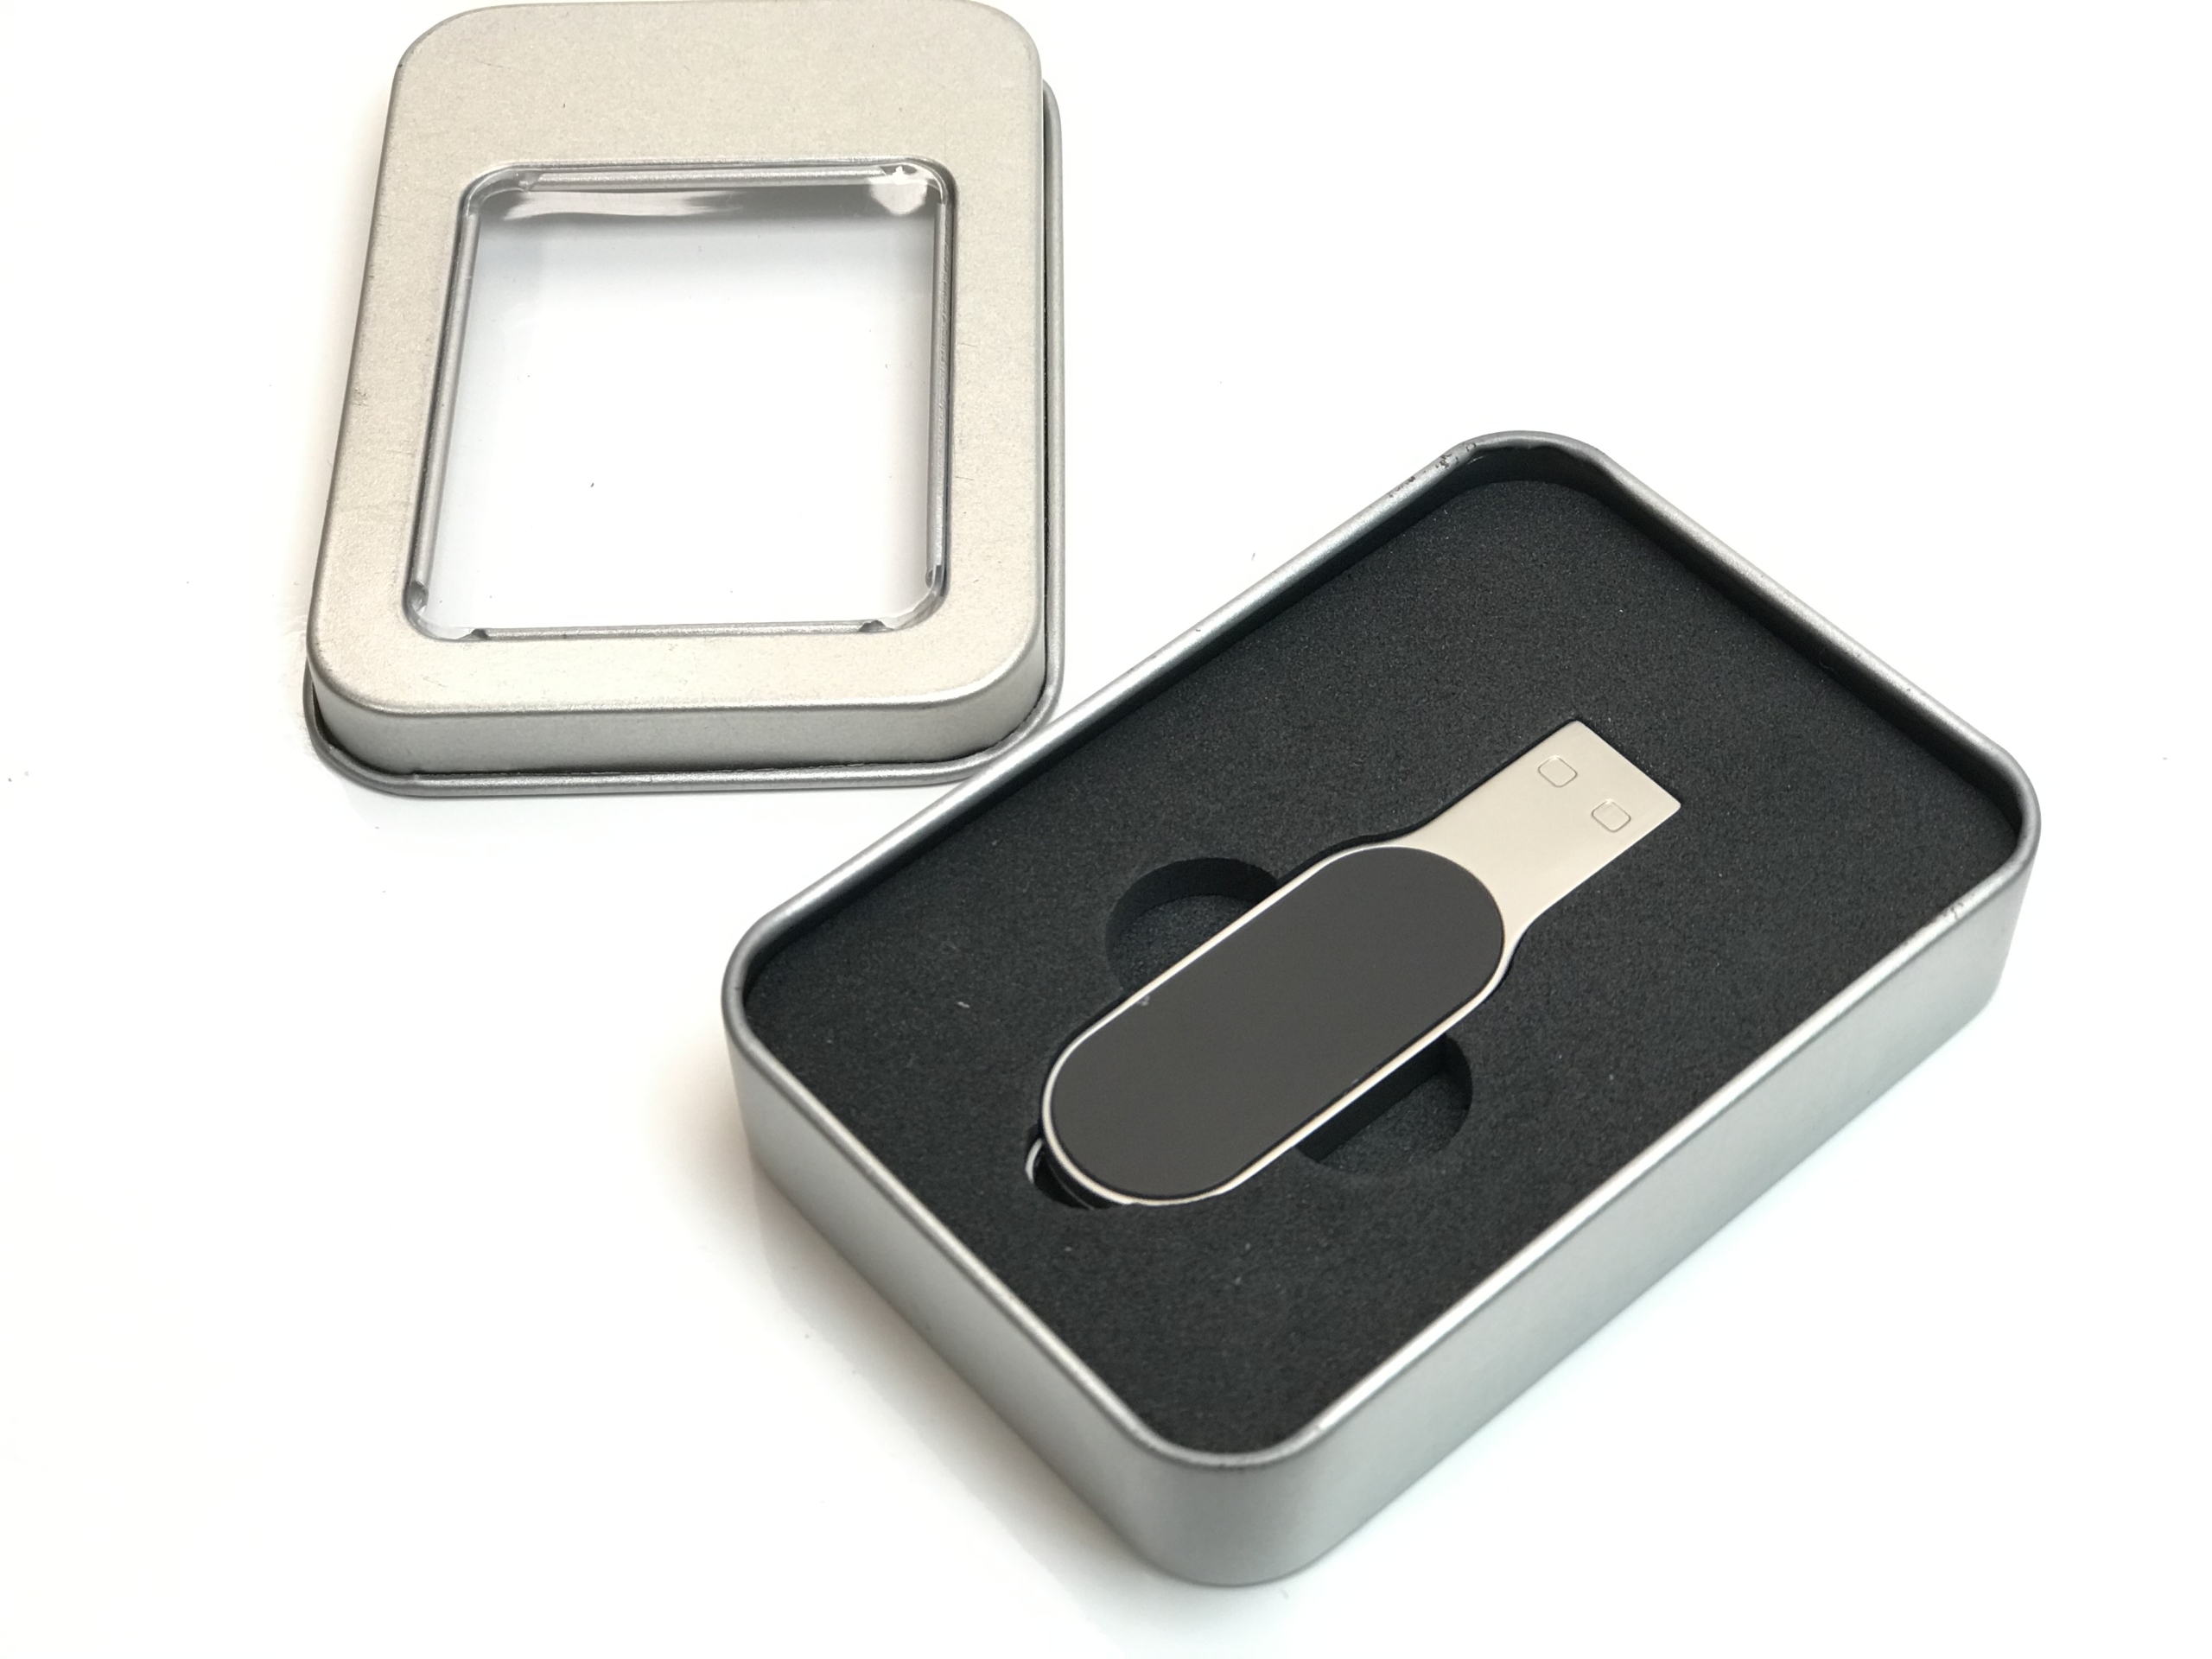 Clé USB Etiquette publicitaire - Clé USB publicitaire personnalisée